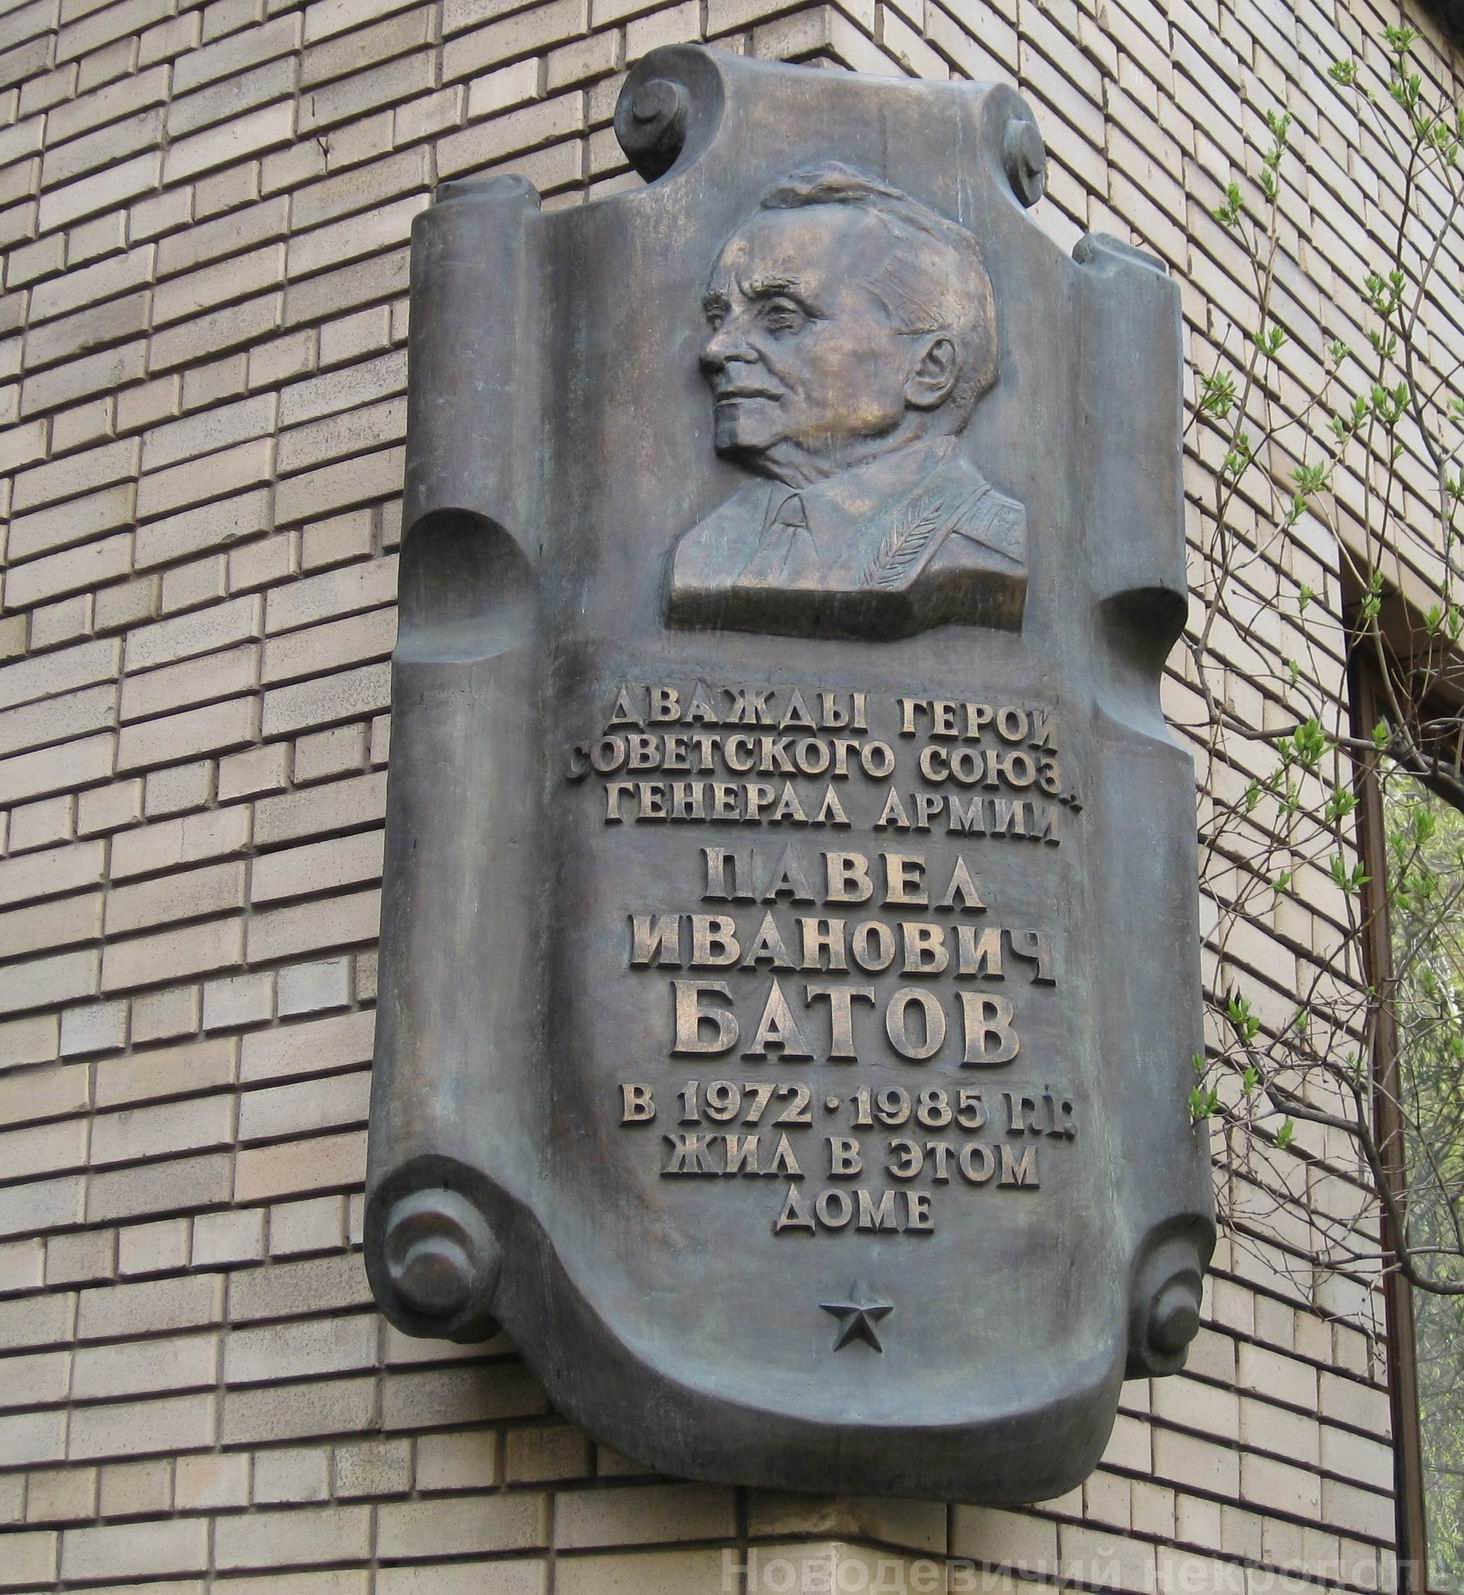 Мемориальная доска Батову П.И. (1897–1985), ск. Г.Жилкин, на Сивцевом вражке, дом 9, открыта 5.6.2002.